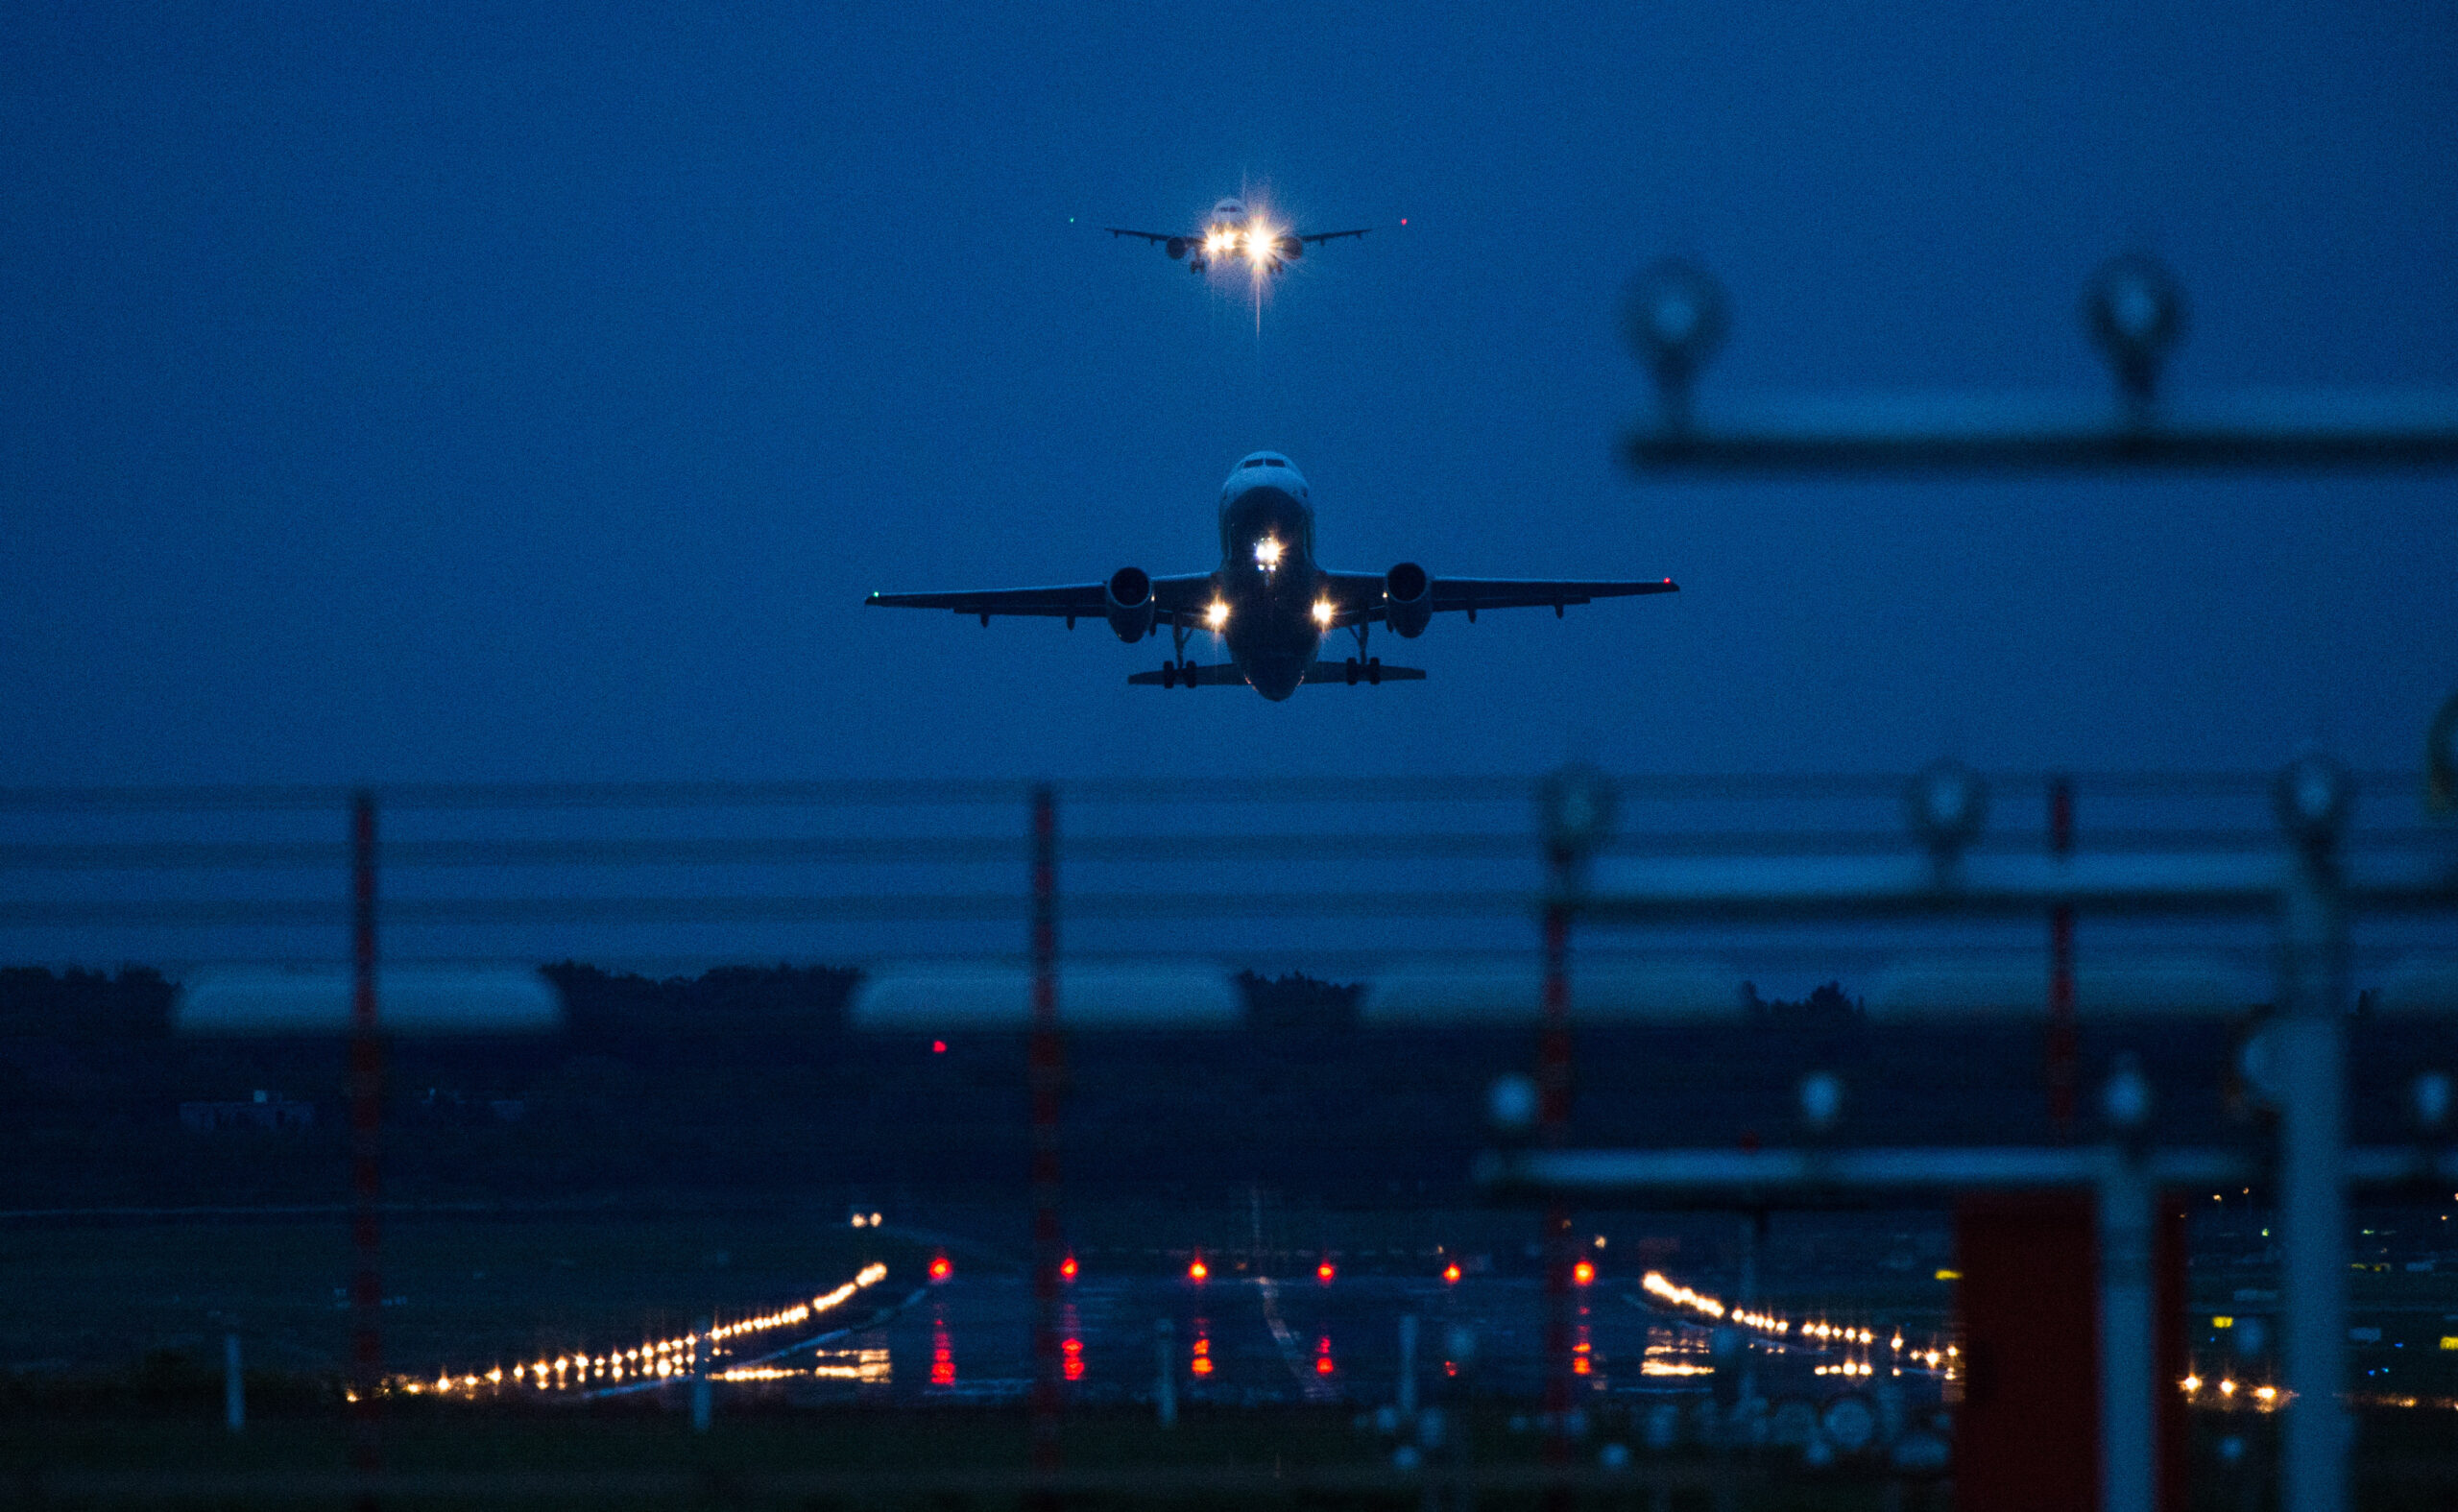 Ein nächtlicher Start am Hamburger Flughafen. Im Hintergrund setzt ein Flugzeug zur Landung an.